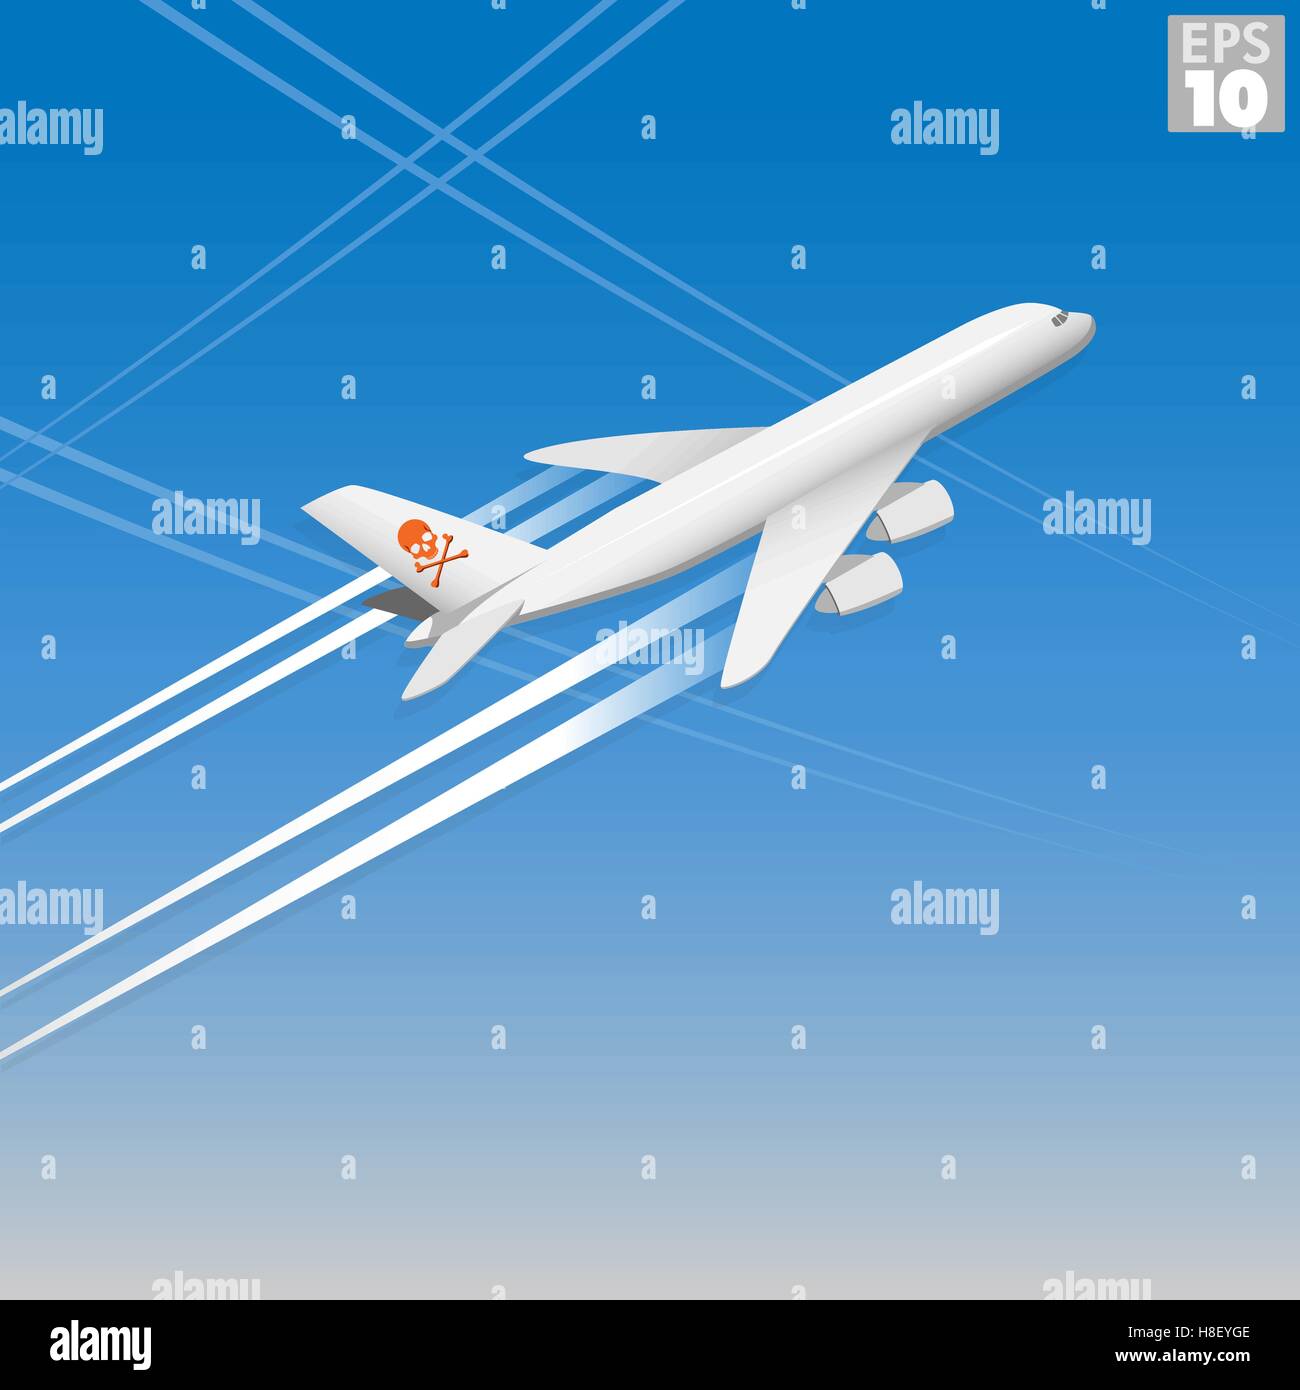 La libération d'avions chemtrails dans l'atmosphère Illustration de Vecteur